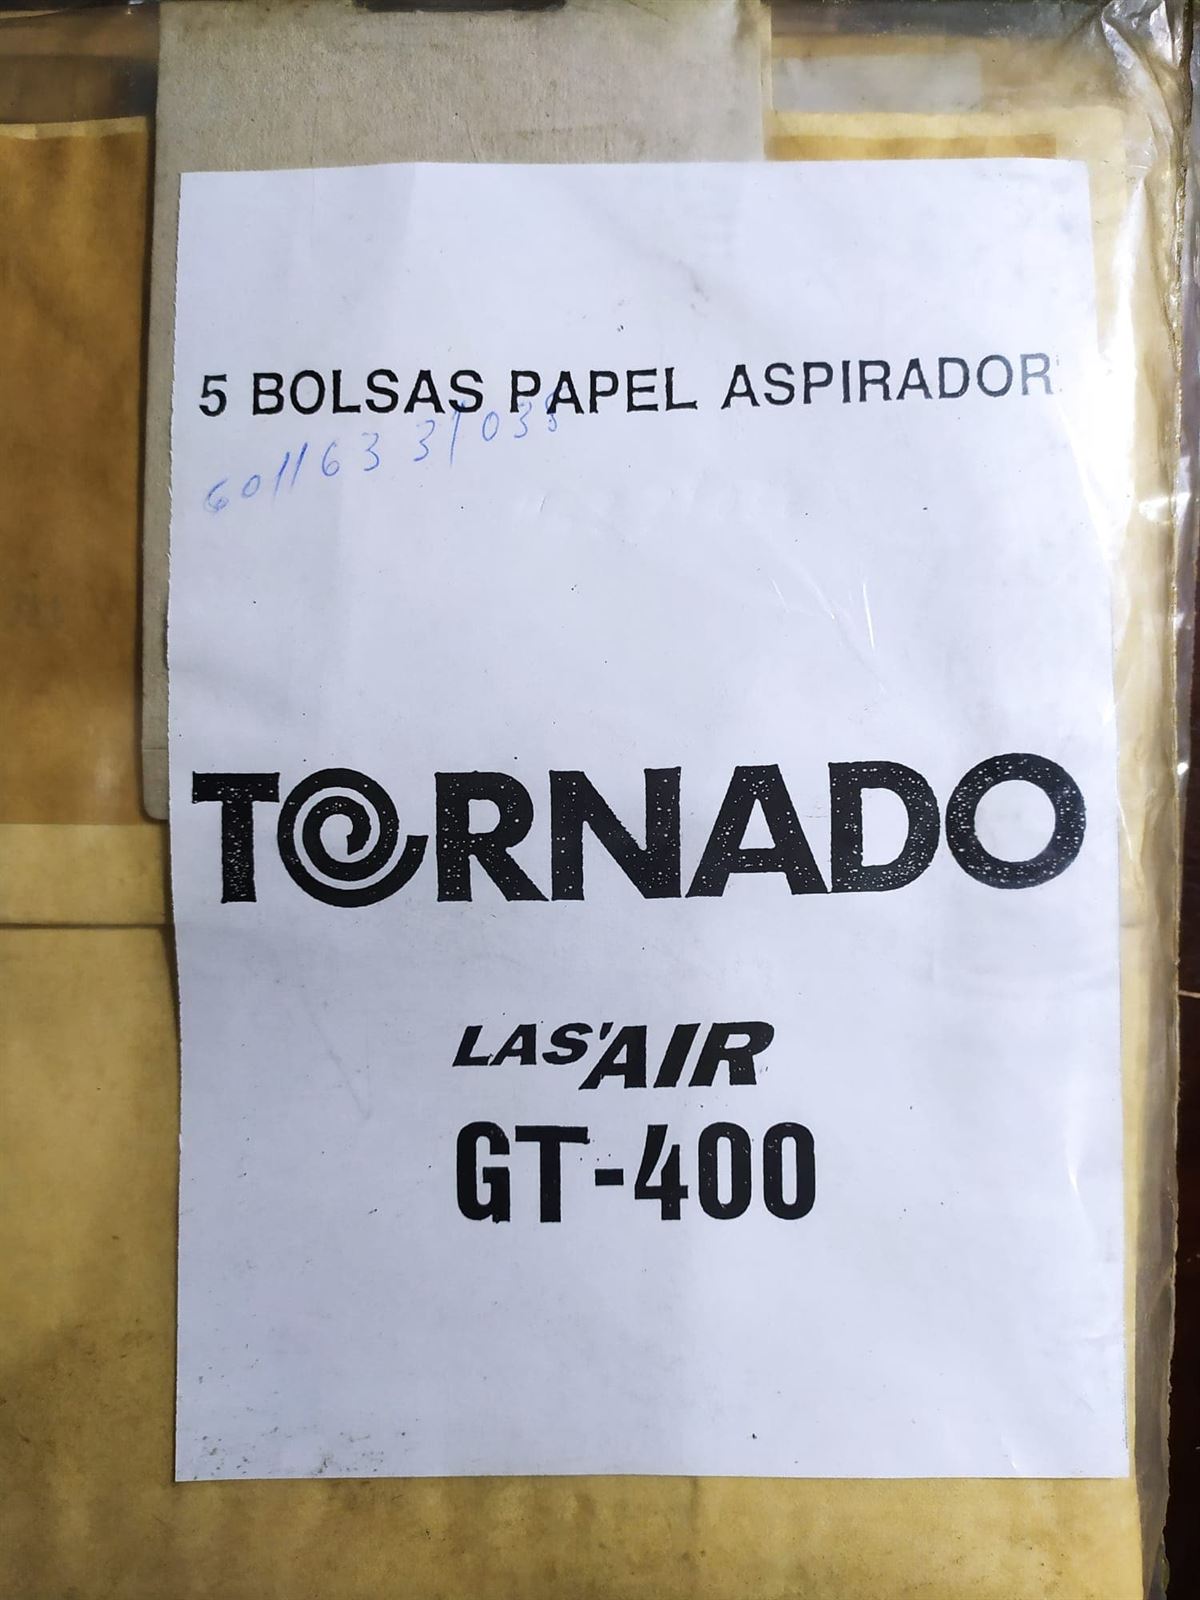 BOLSA ASPIRADOR TORNADO, ELECTROLUX, PAQUETE 5 BOLSAS PAPEL, RECAMBIO ORIGINAL, 60116331038, GT-400, 9001959619 - Imagen 3